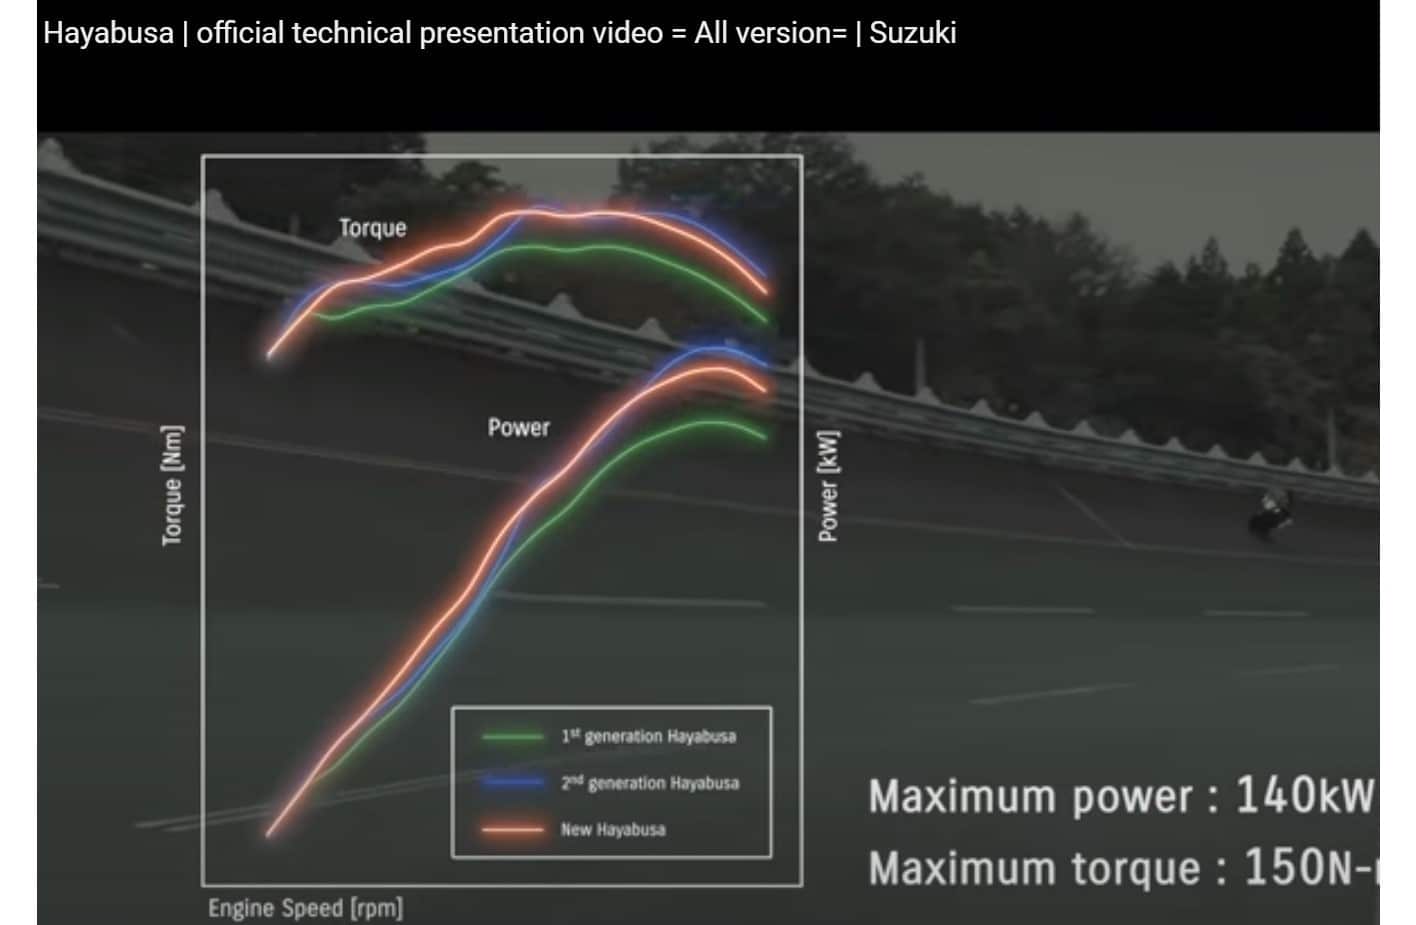 Hayabusa video med komplet teknisk gennemgang